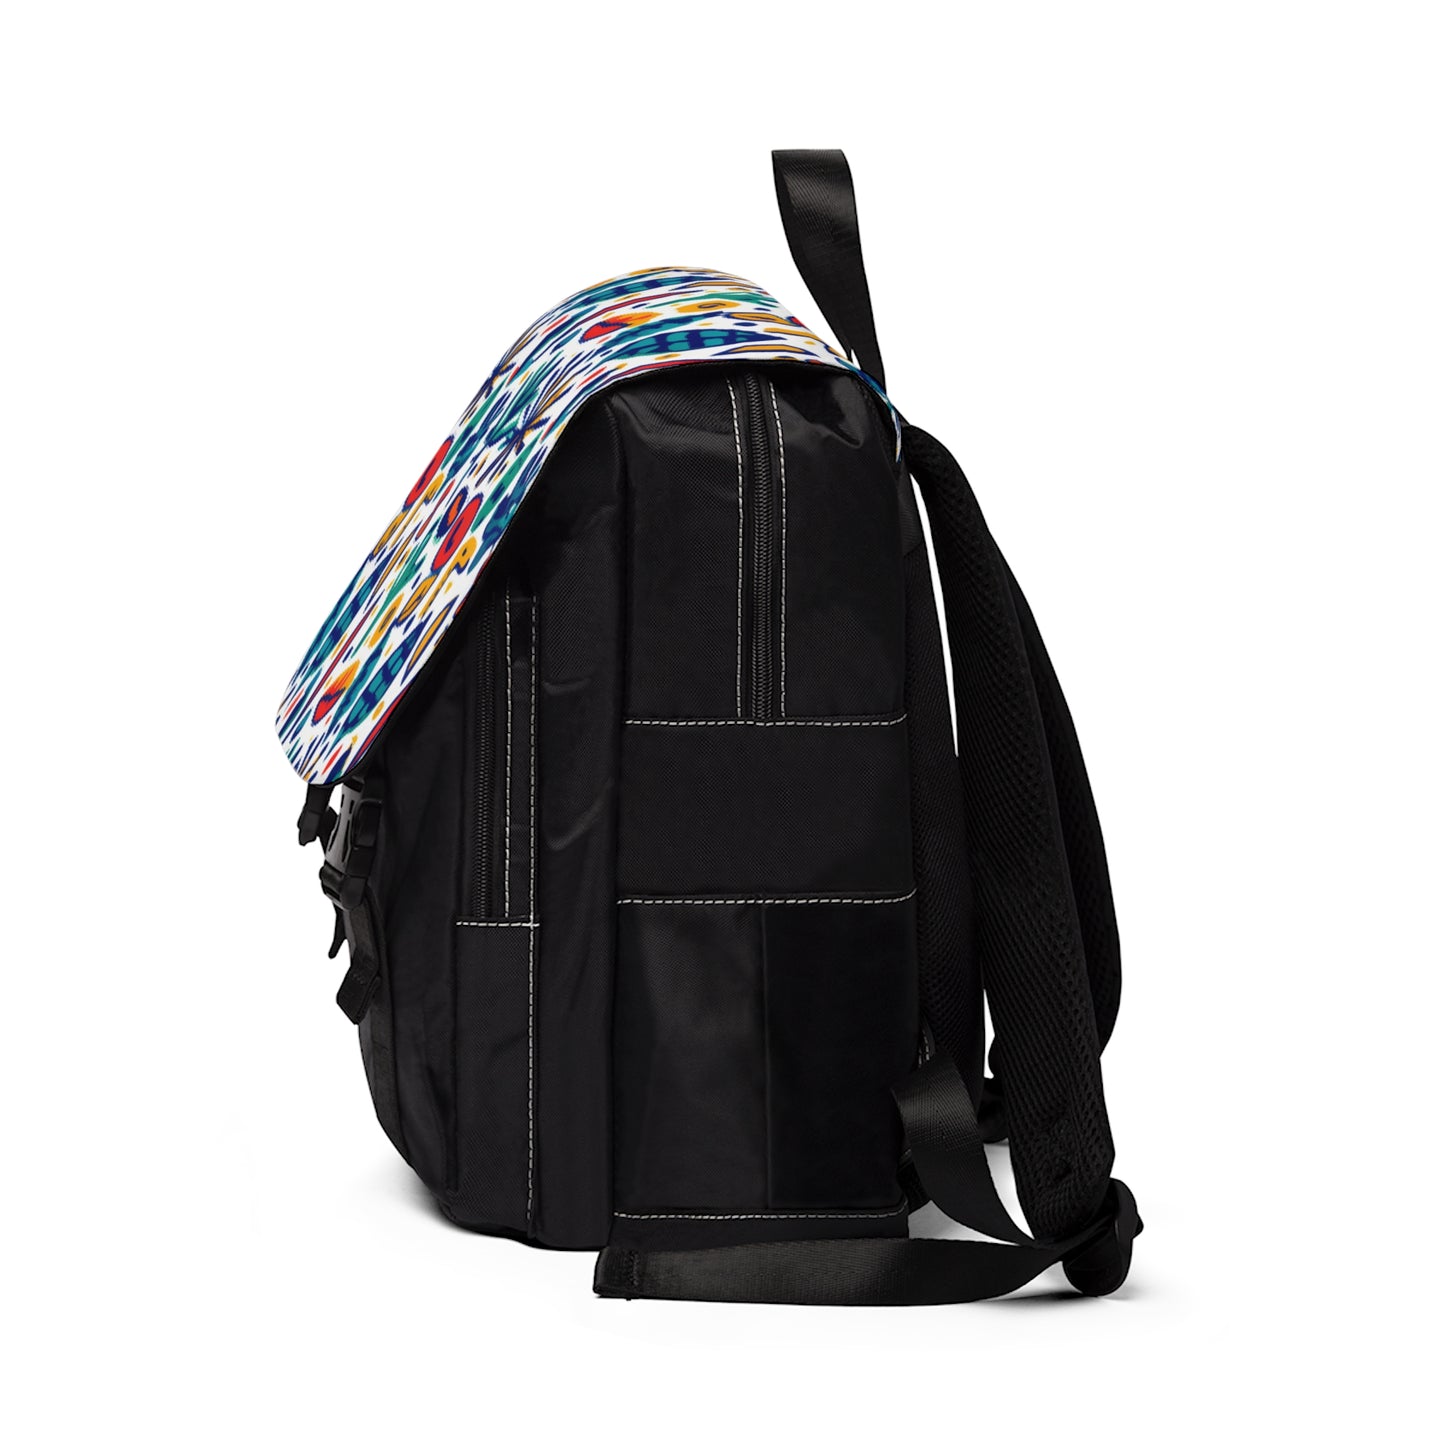 Chaparral Gertrude - Casual Shoulder Backpack